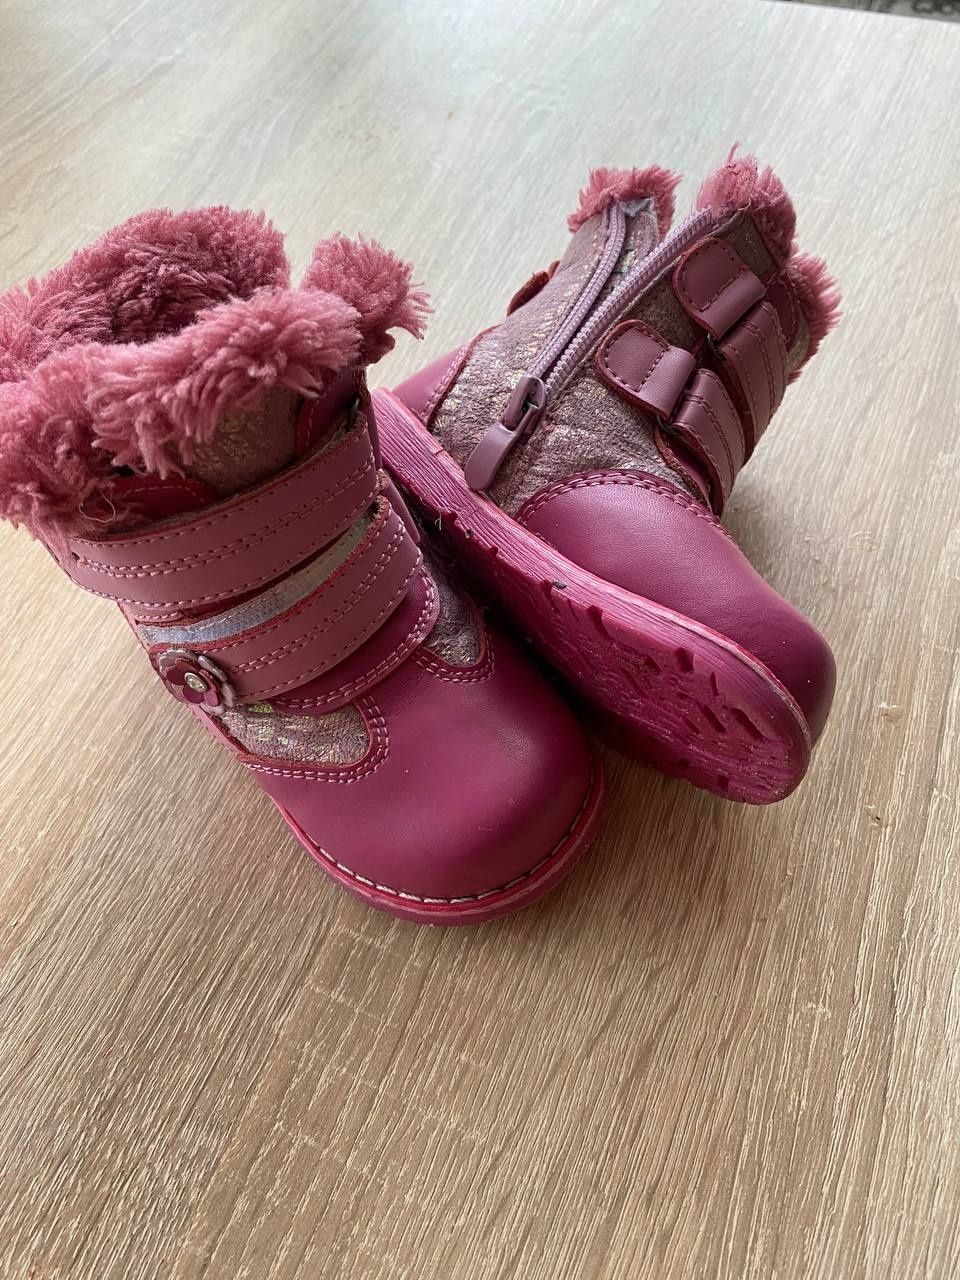 Зимові чобітки для дівчинки